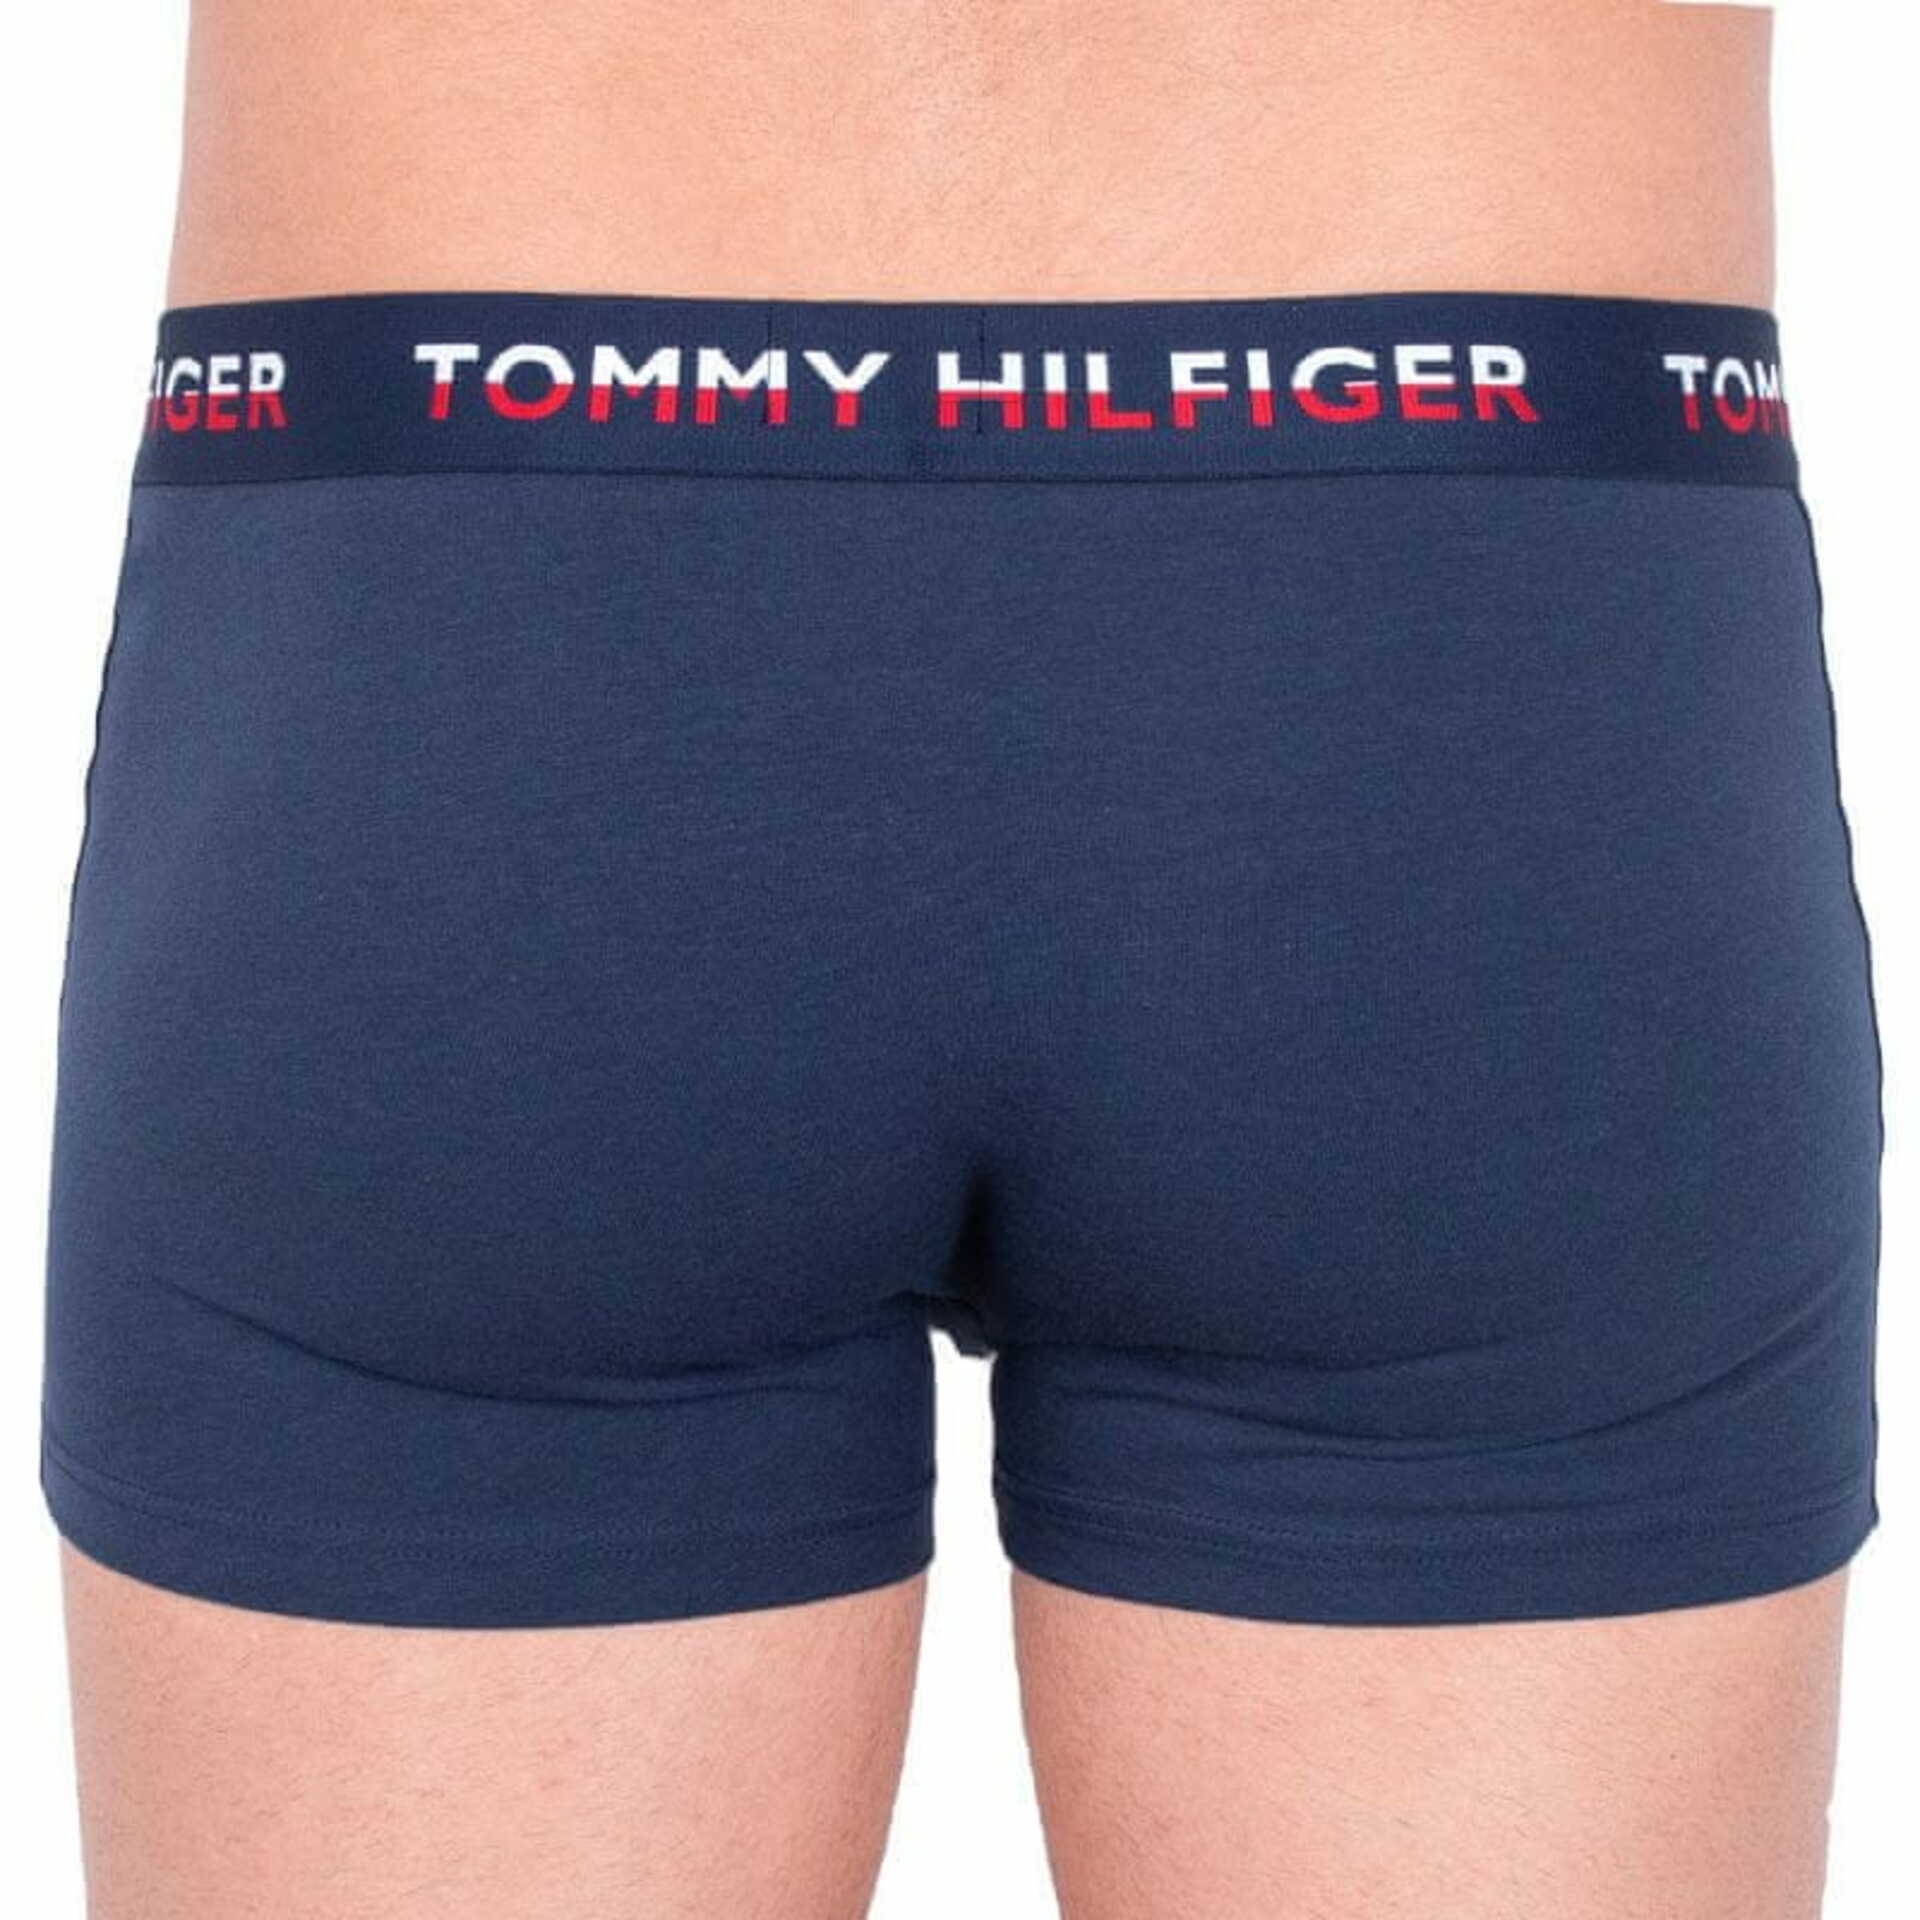 Tommy Hilfiger pánské modré boxerky 2pack - XL (006)